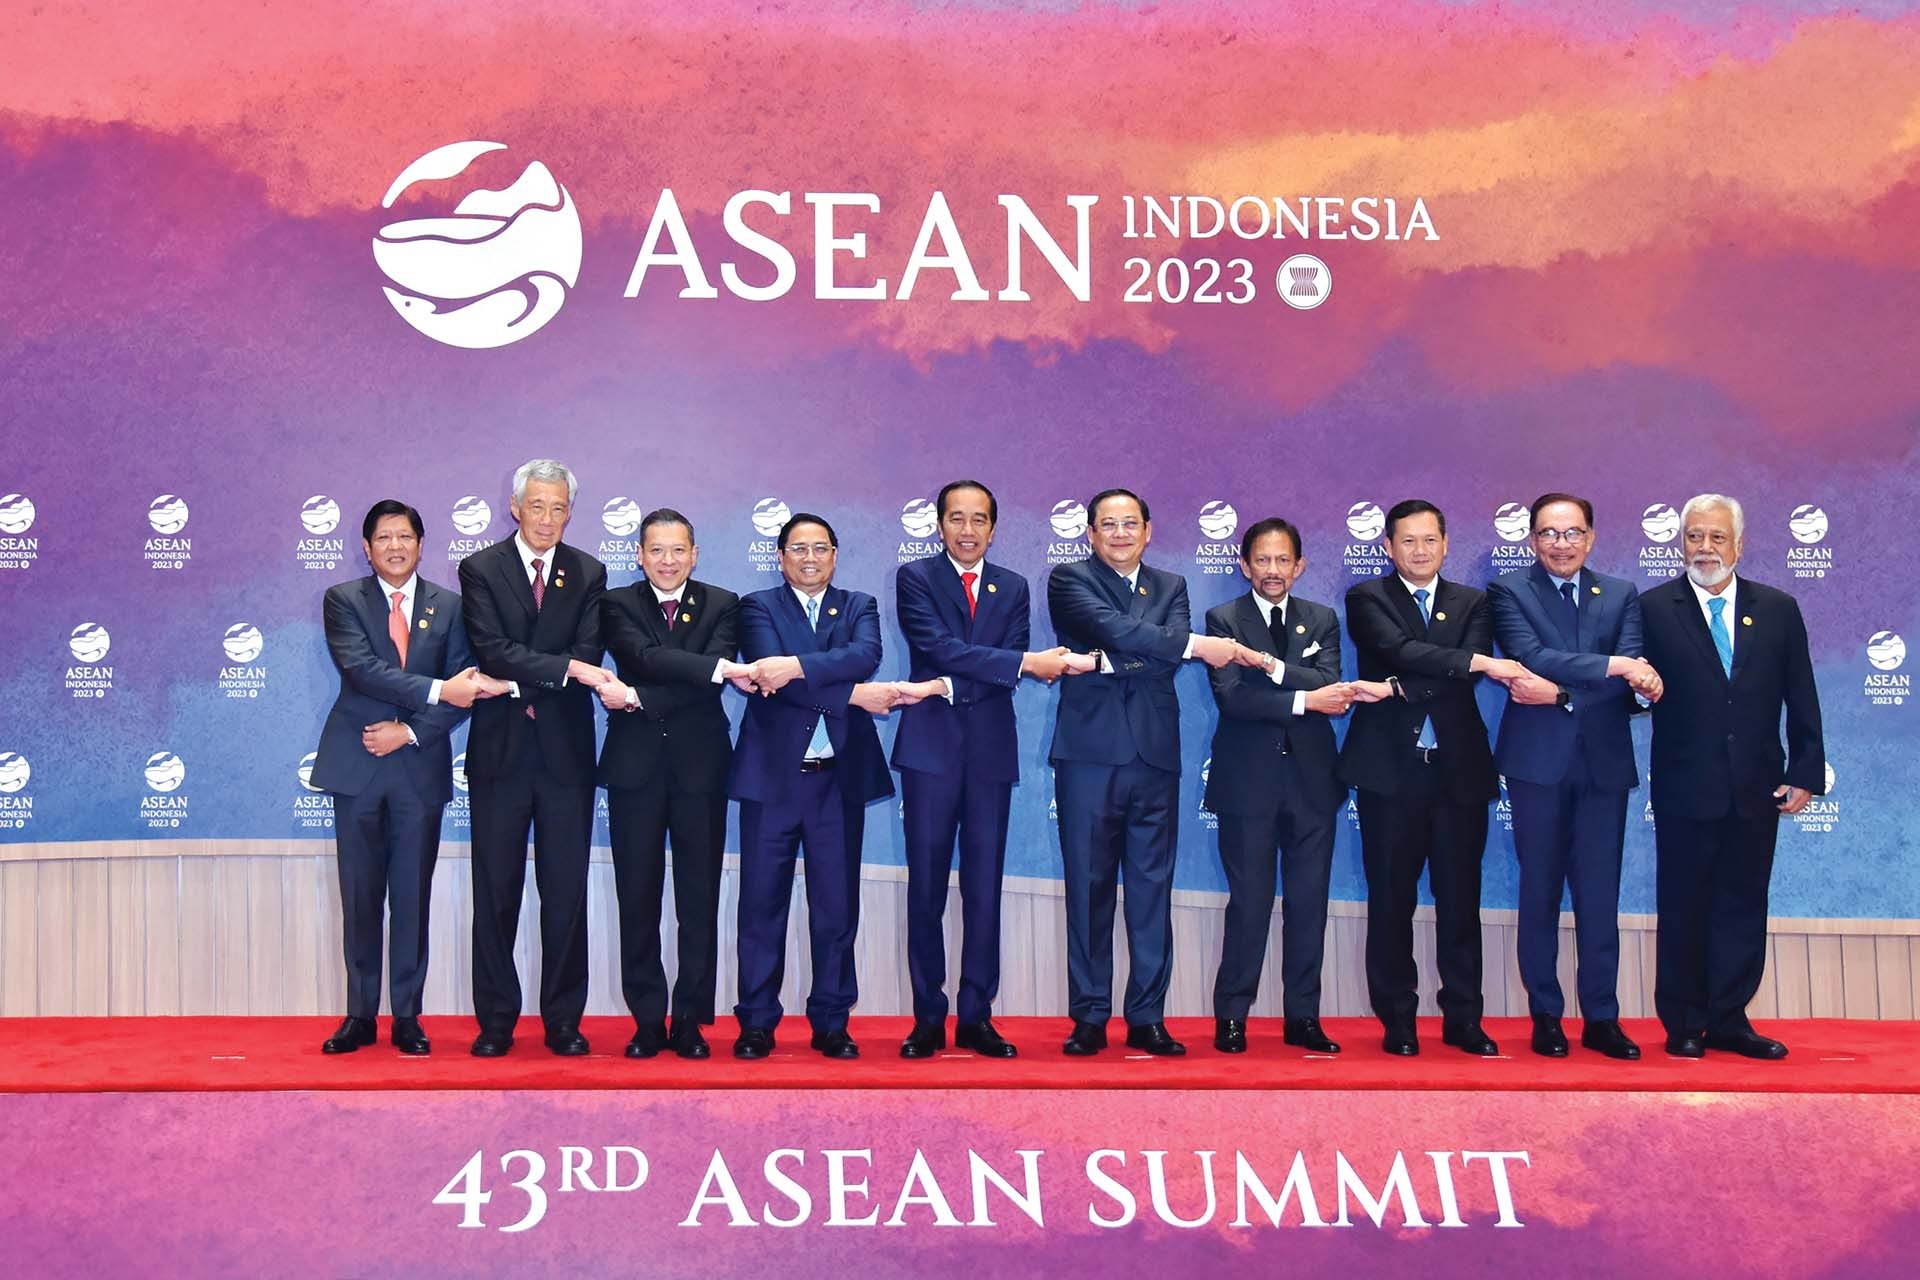 (Trực tuyến) Bàn tròn: ASEAN trong tôi, ngôi nhà của chúng ta